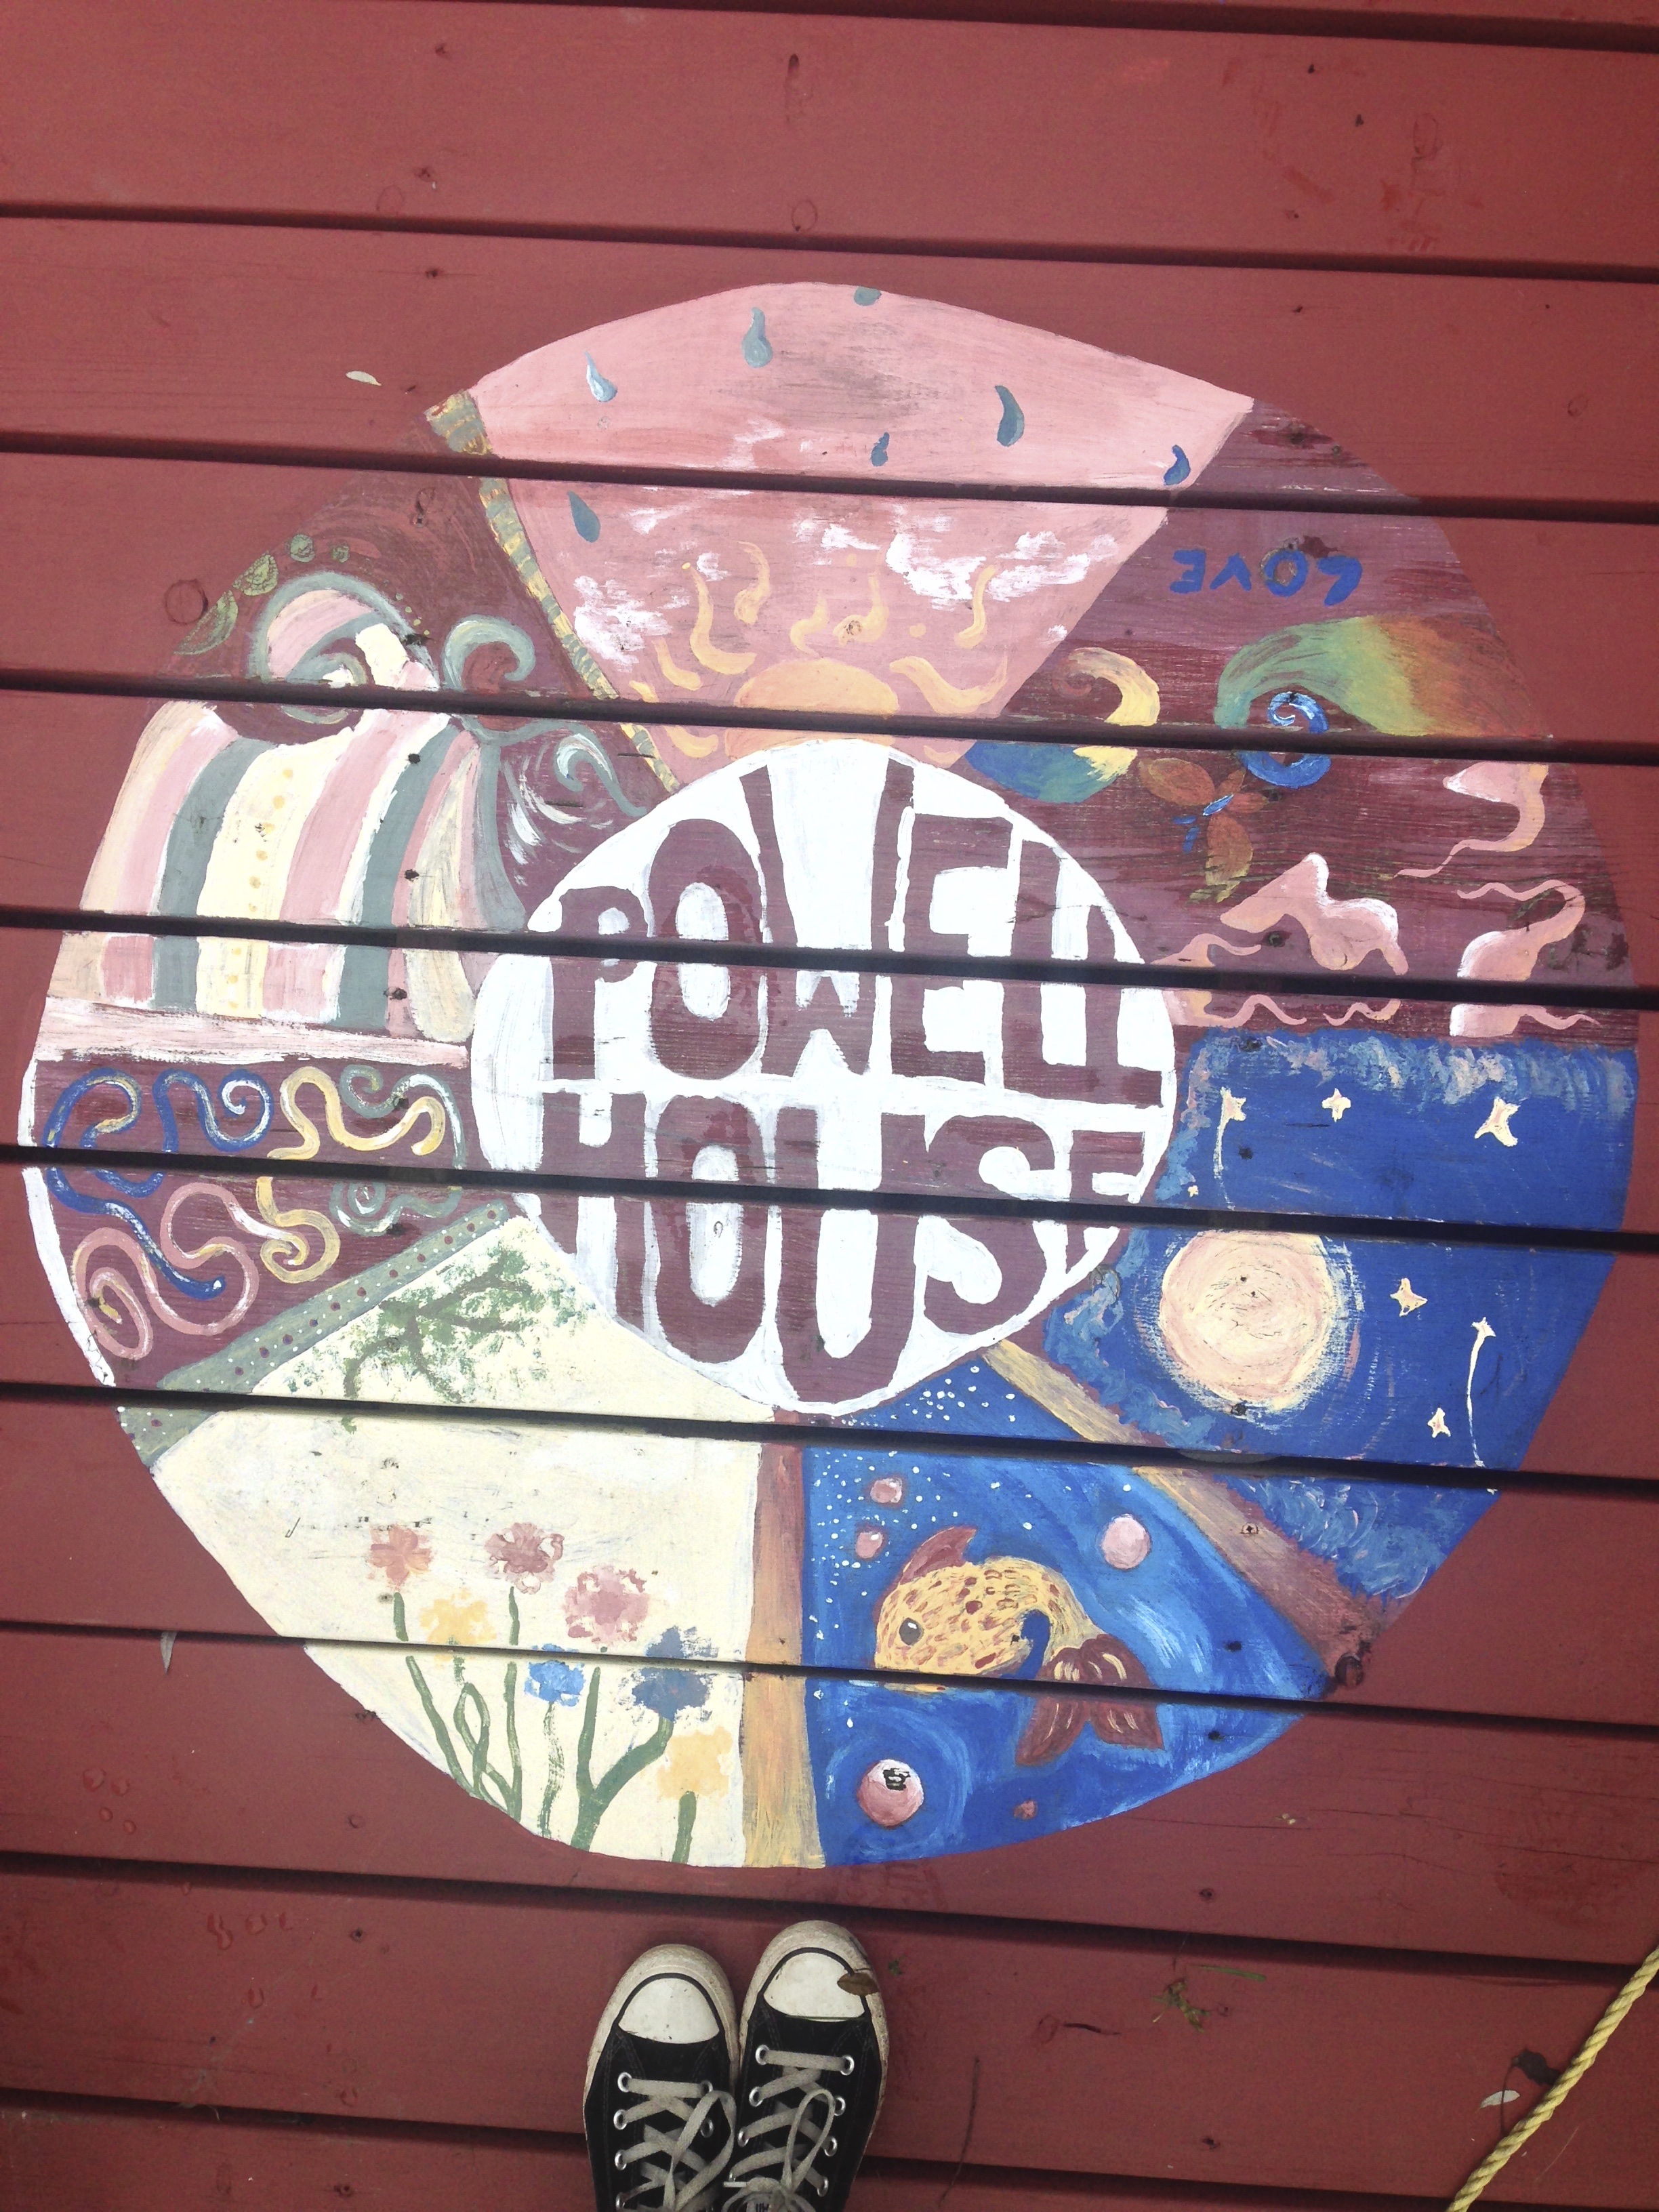 powell house mural.jpg